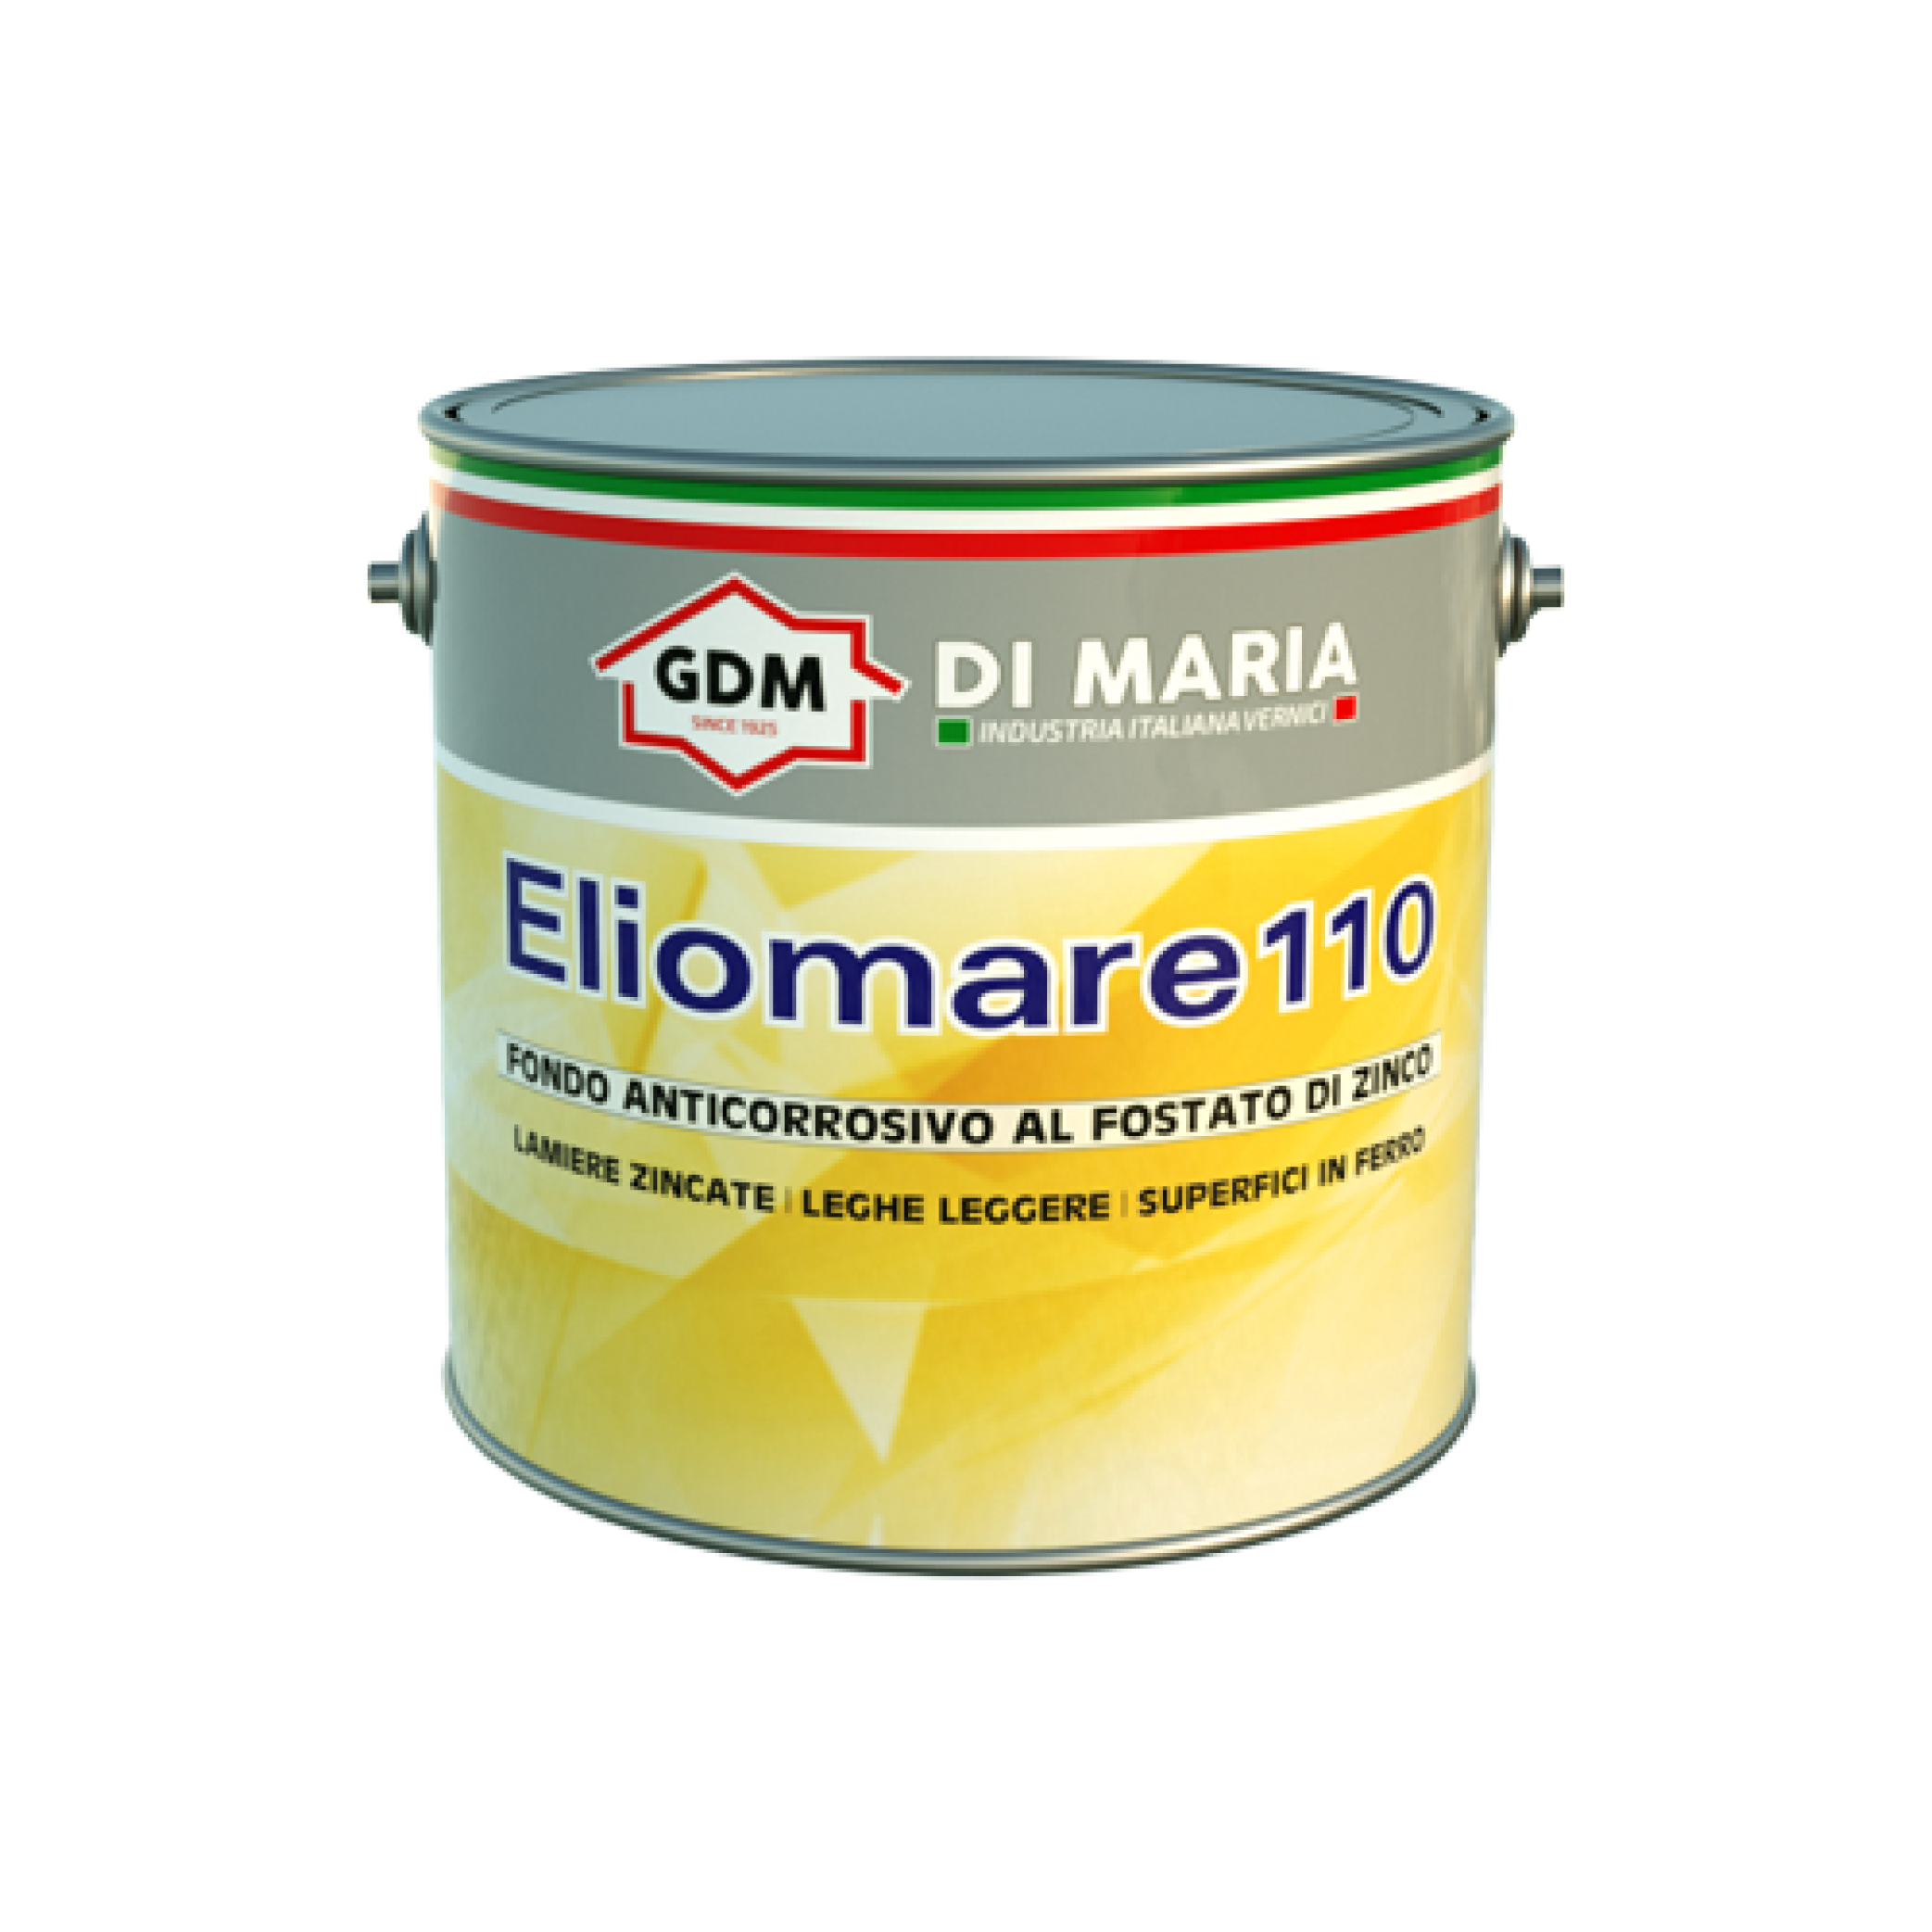 ELIOMARE 110 - GDM